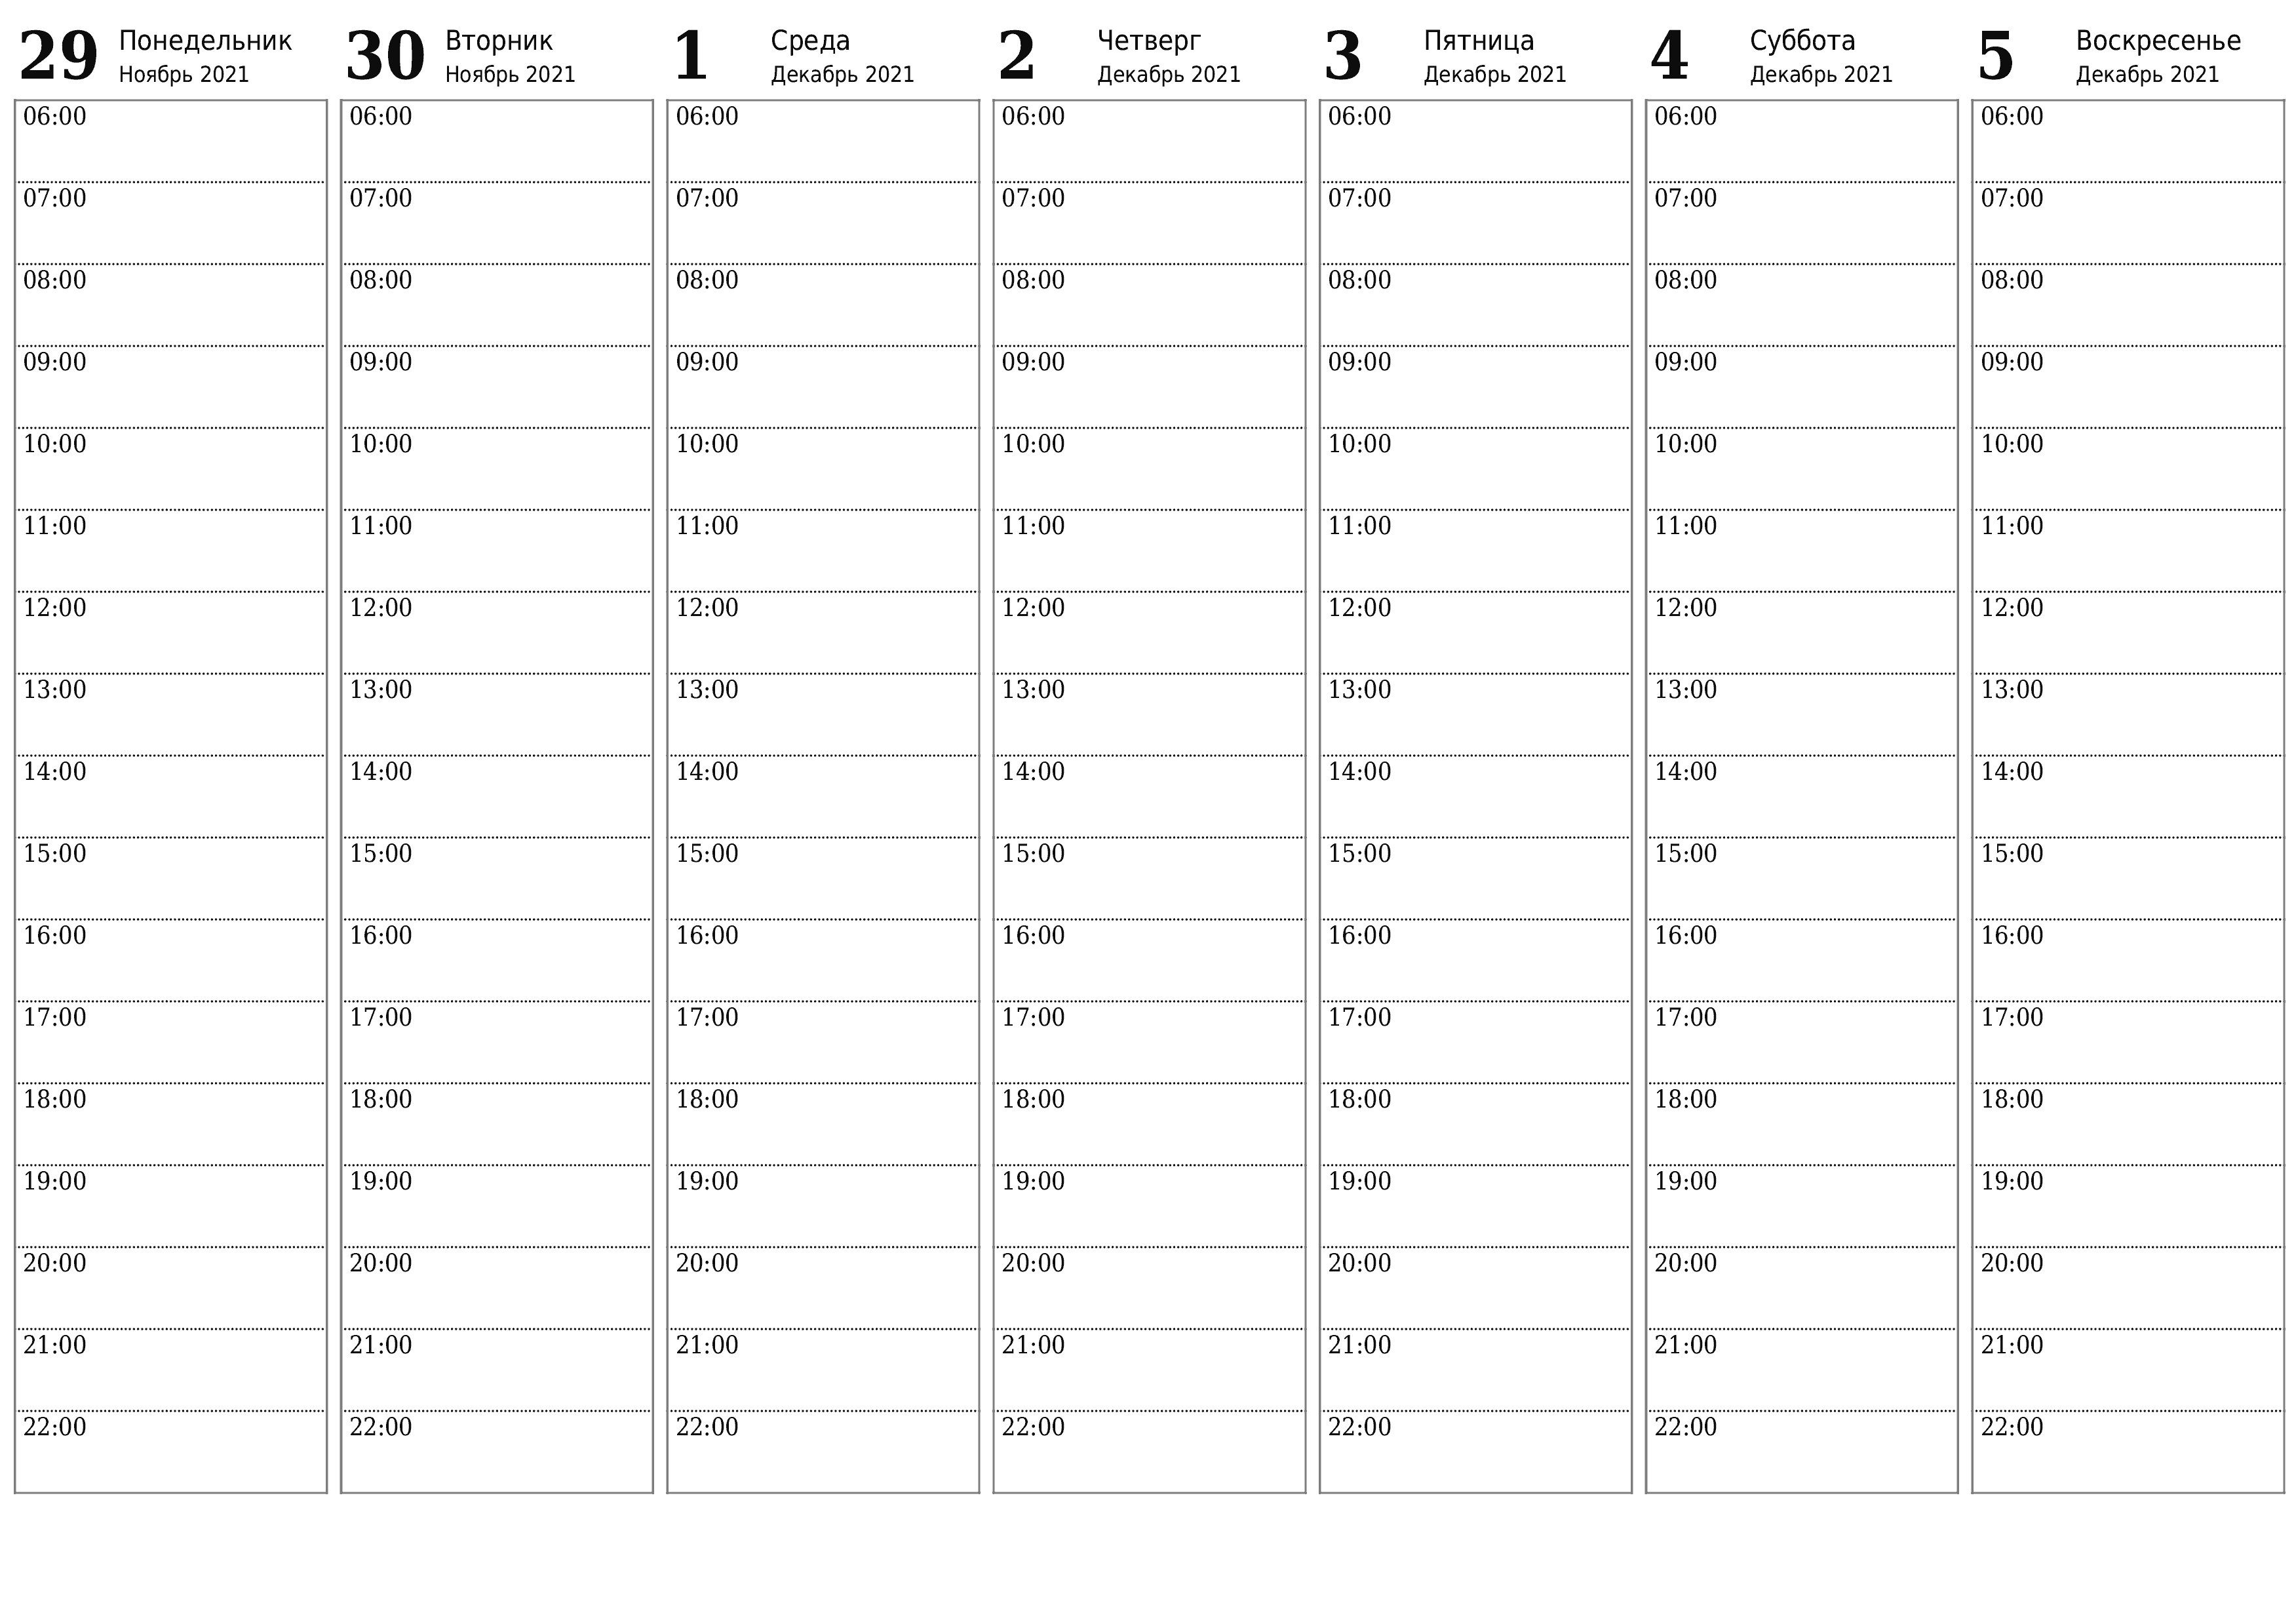 Пустой еженедельный календарь-планер на недели Декабрь 2021